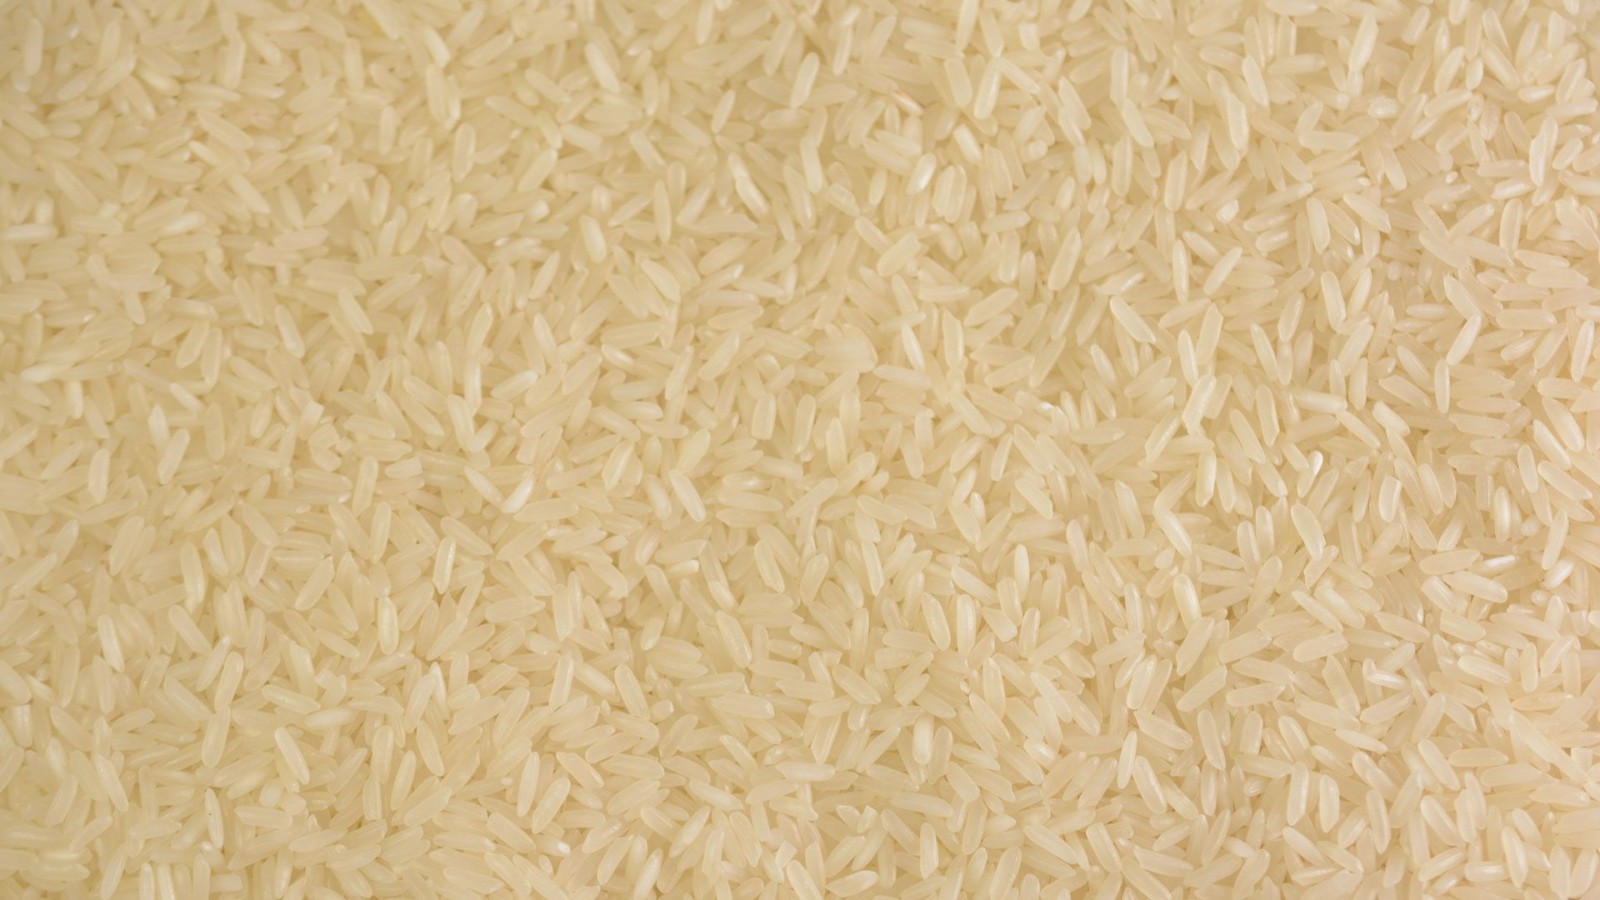 Ryż jaśminowy - 1kg